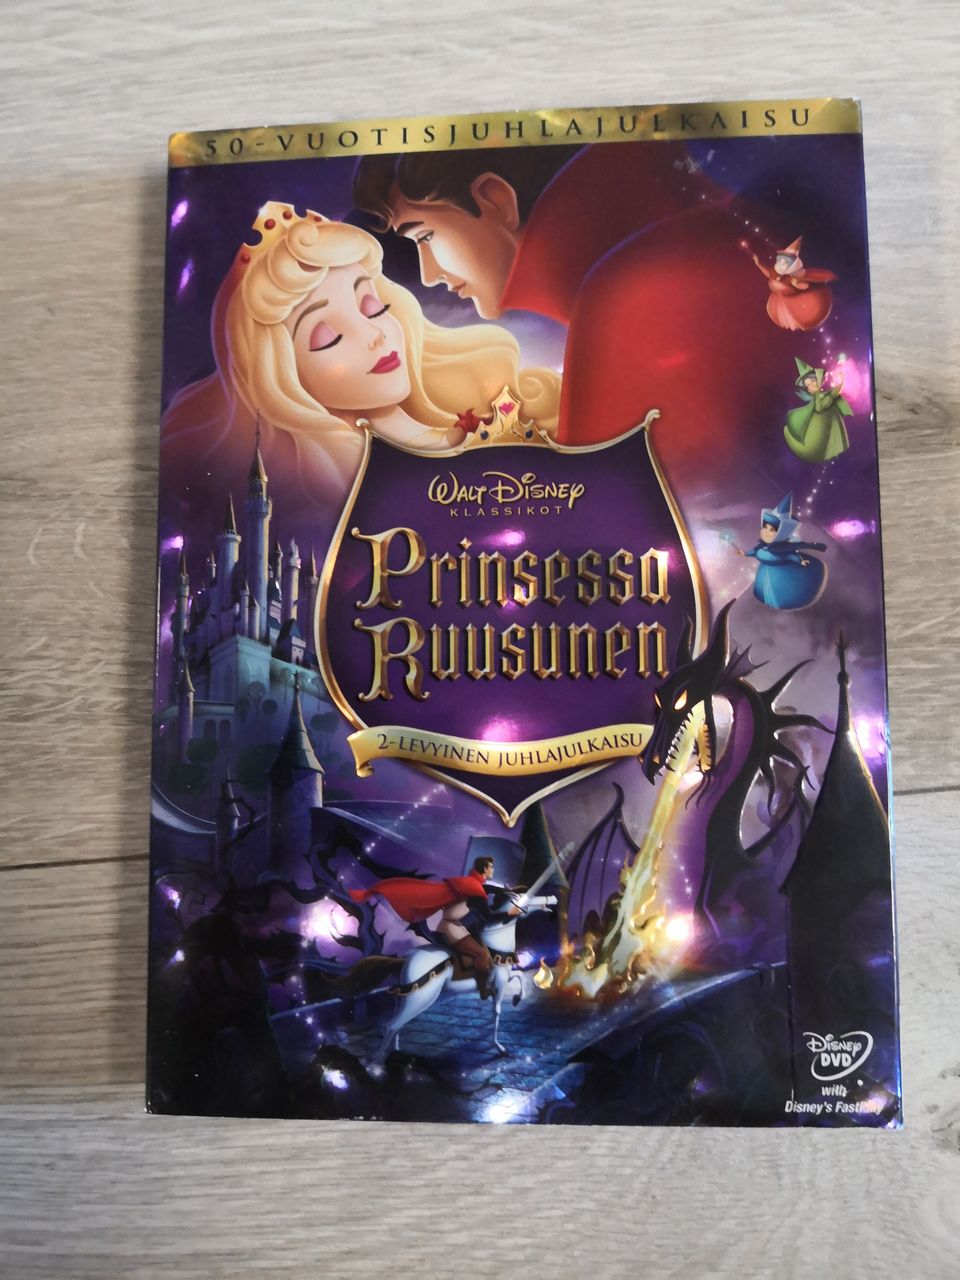 Disneyn Prinsessa Ruusunen 2-levyinen juhlajulkaisu DVD